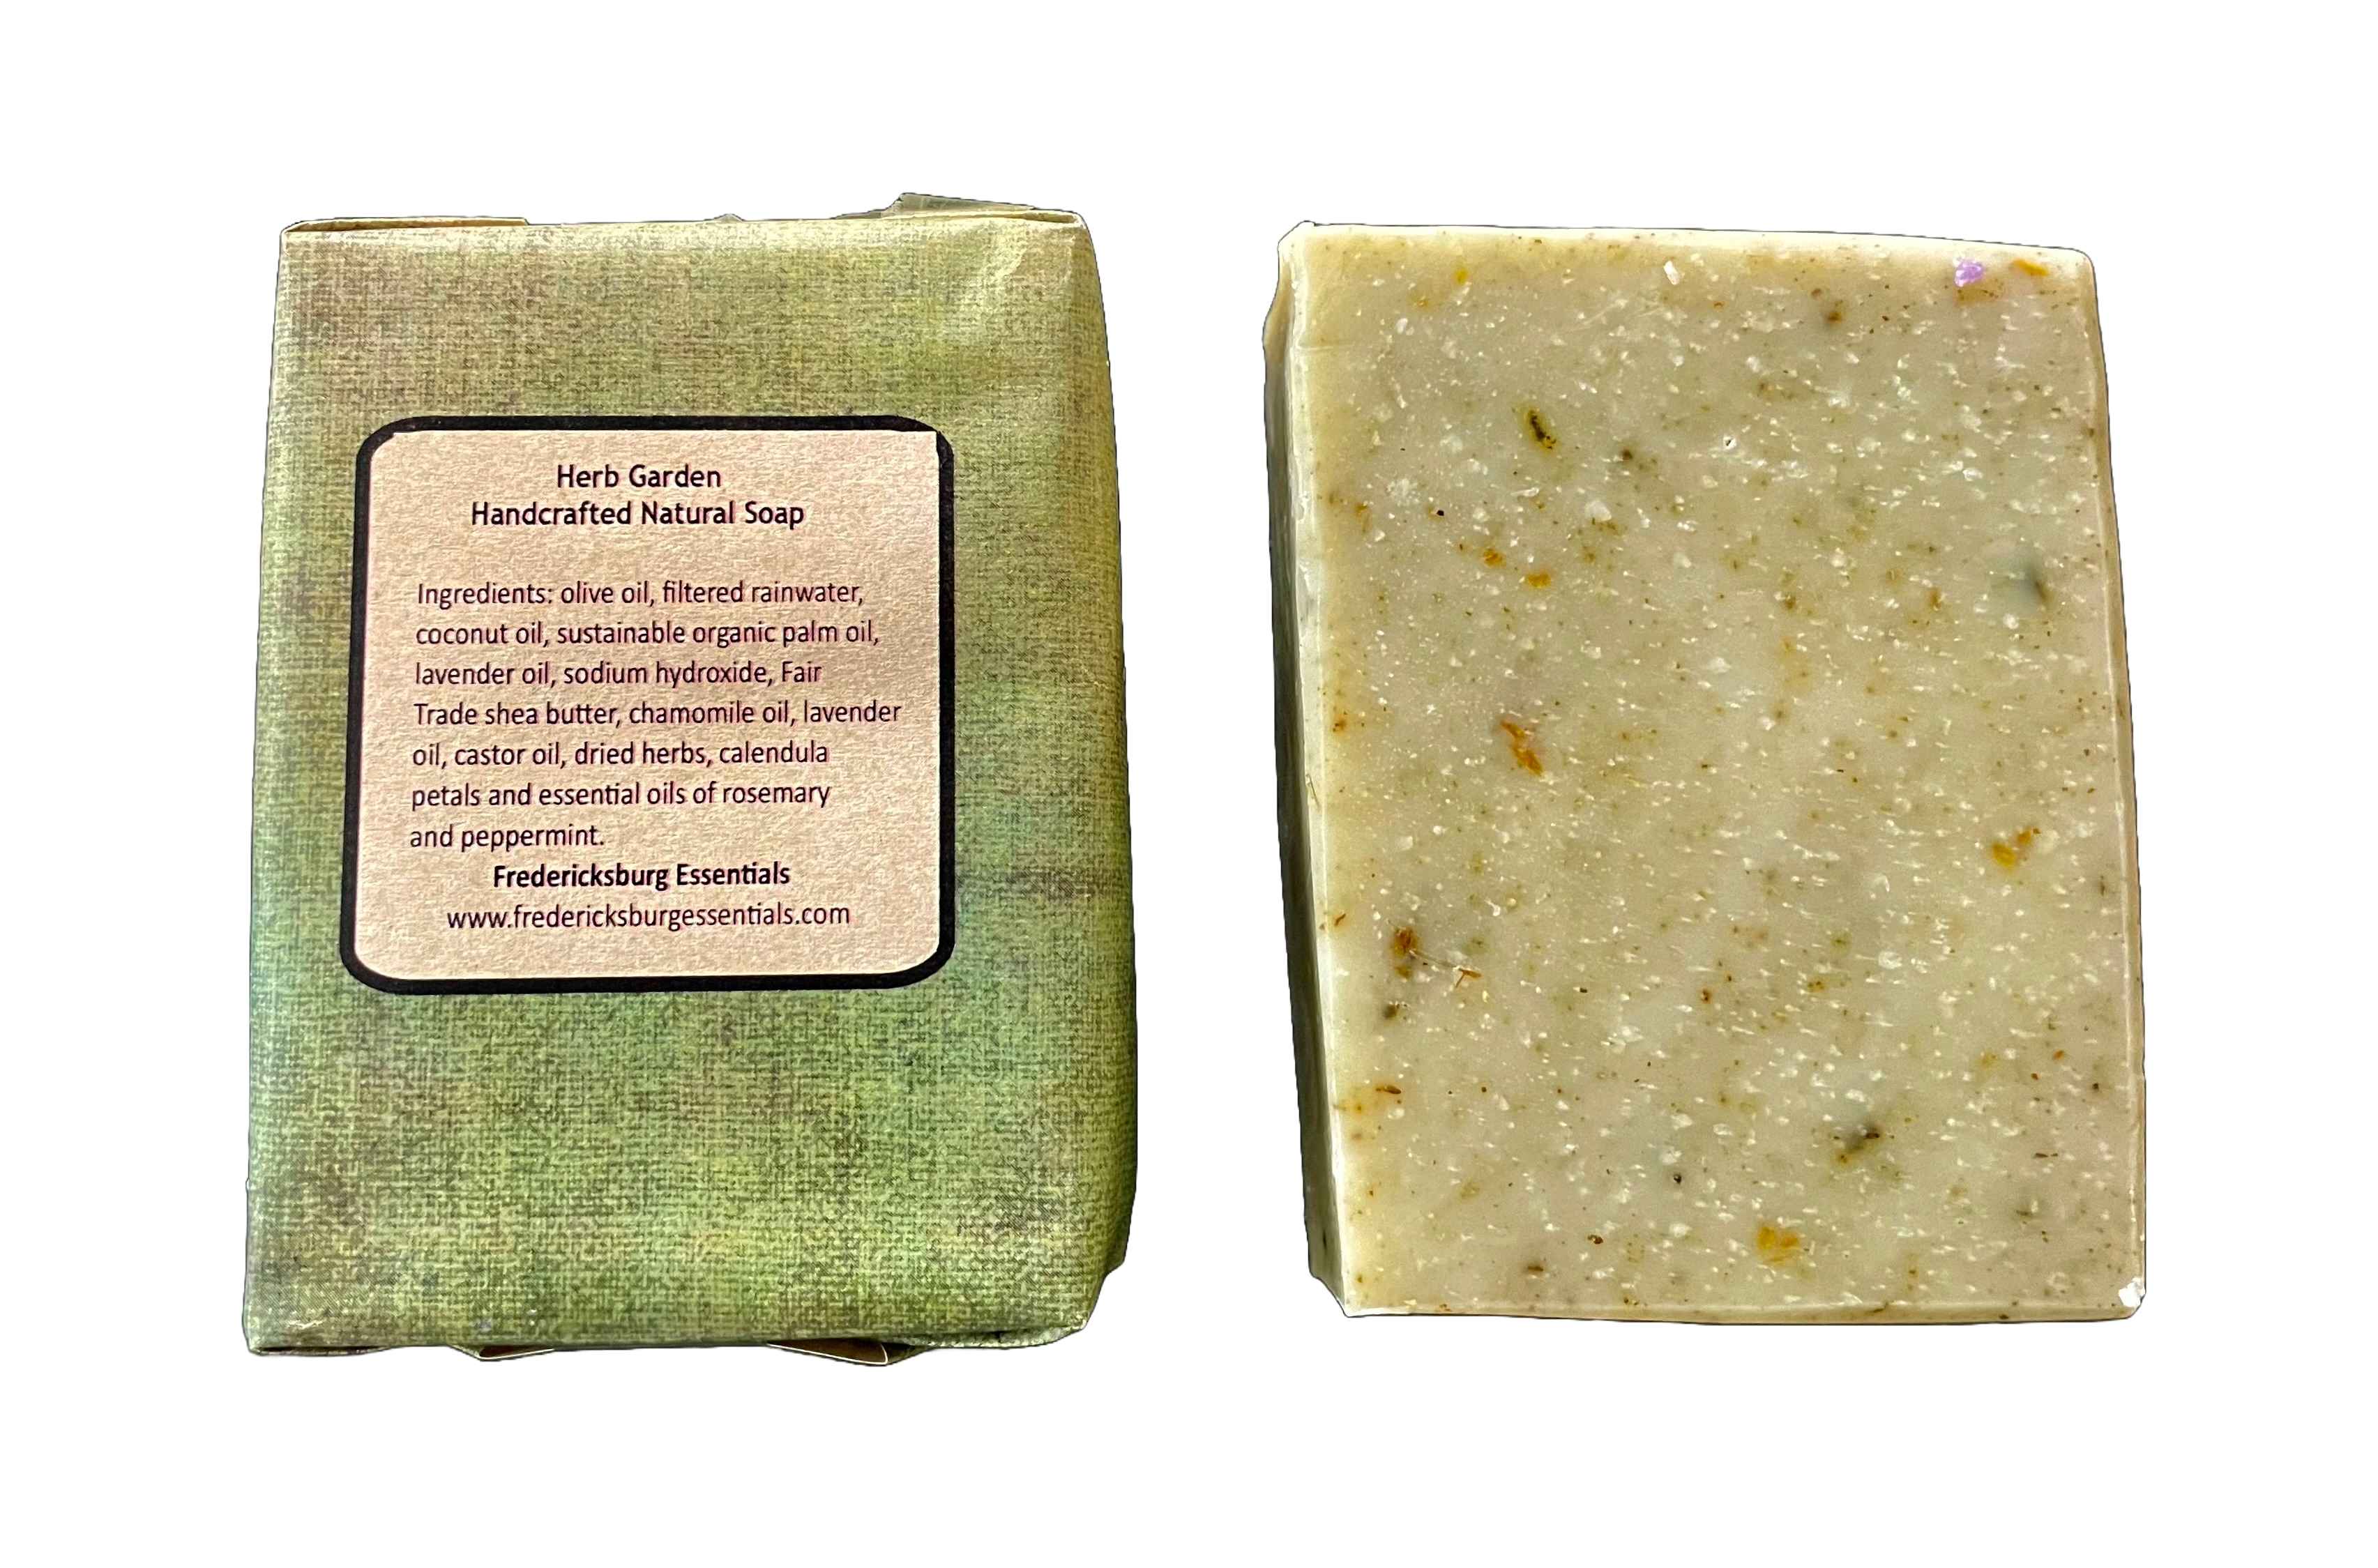 Fredericksburg Essentials - Herb Garden handcrafted soap